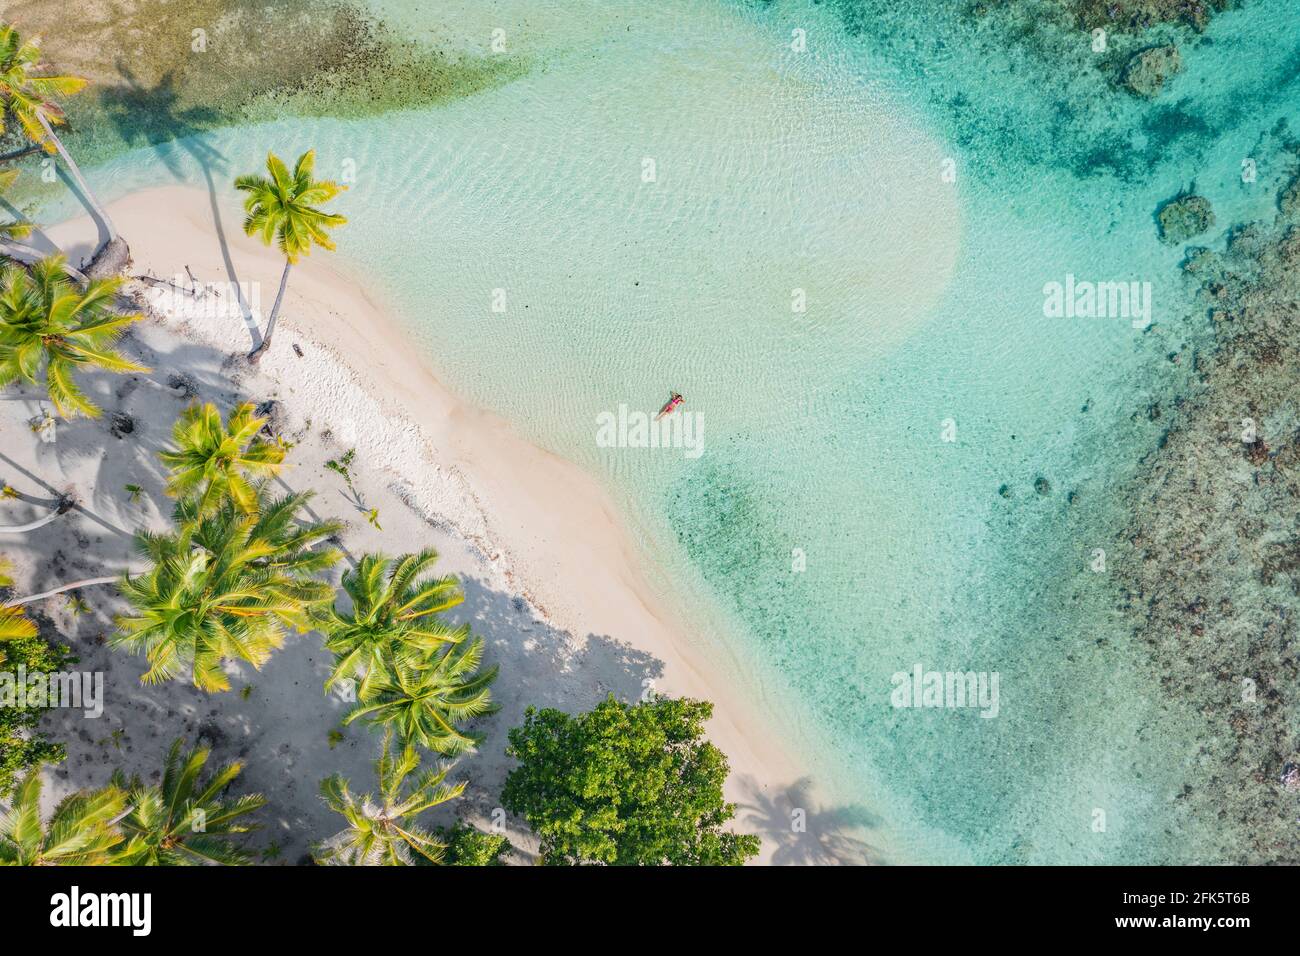 Strand Reise Urlaub top down Drohne Foto von Luxus tropisch Paradiesischer Strand mit eleganter Frau, die in perfektem türkisfarbenem Wasser schwimmend ist Im Korallenriff Stockfoto